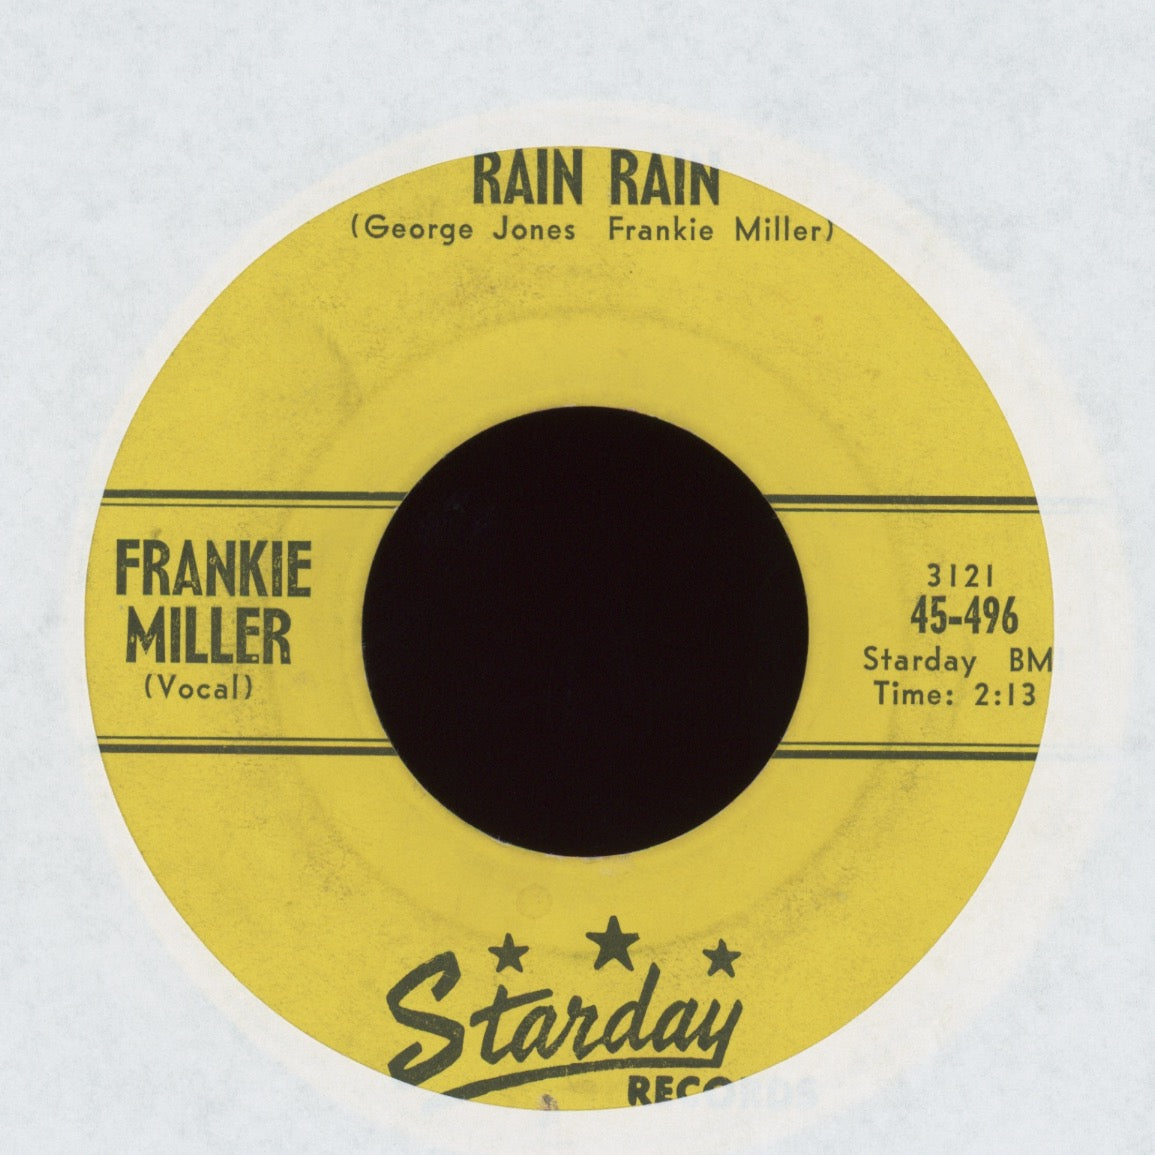 Frankie Miller - Rain Rain on Starday